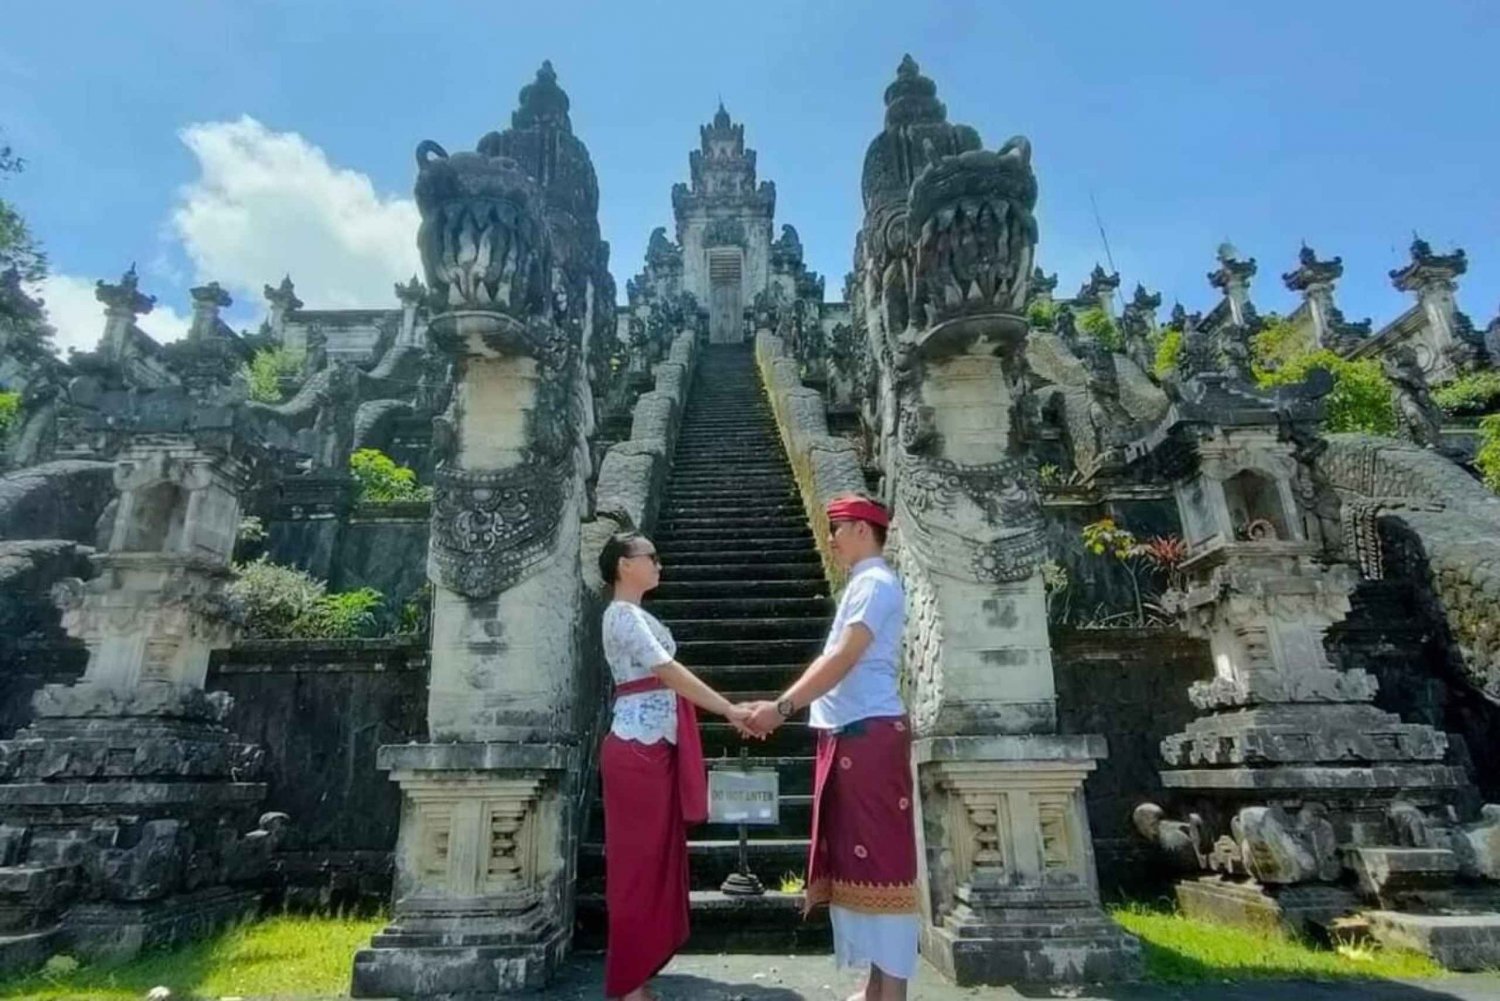 Excursão ao Templo Majestic Gate To Heaven Lempuyang com destaque em Bali